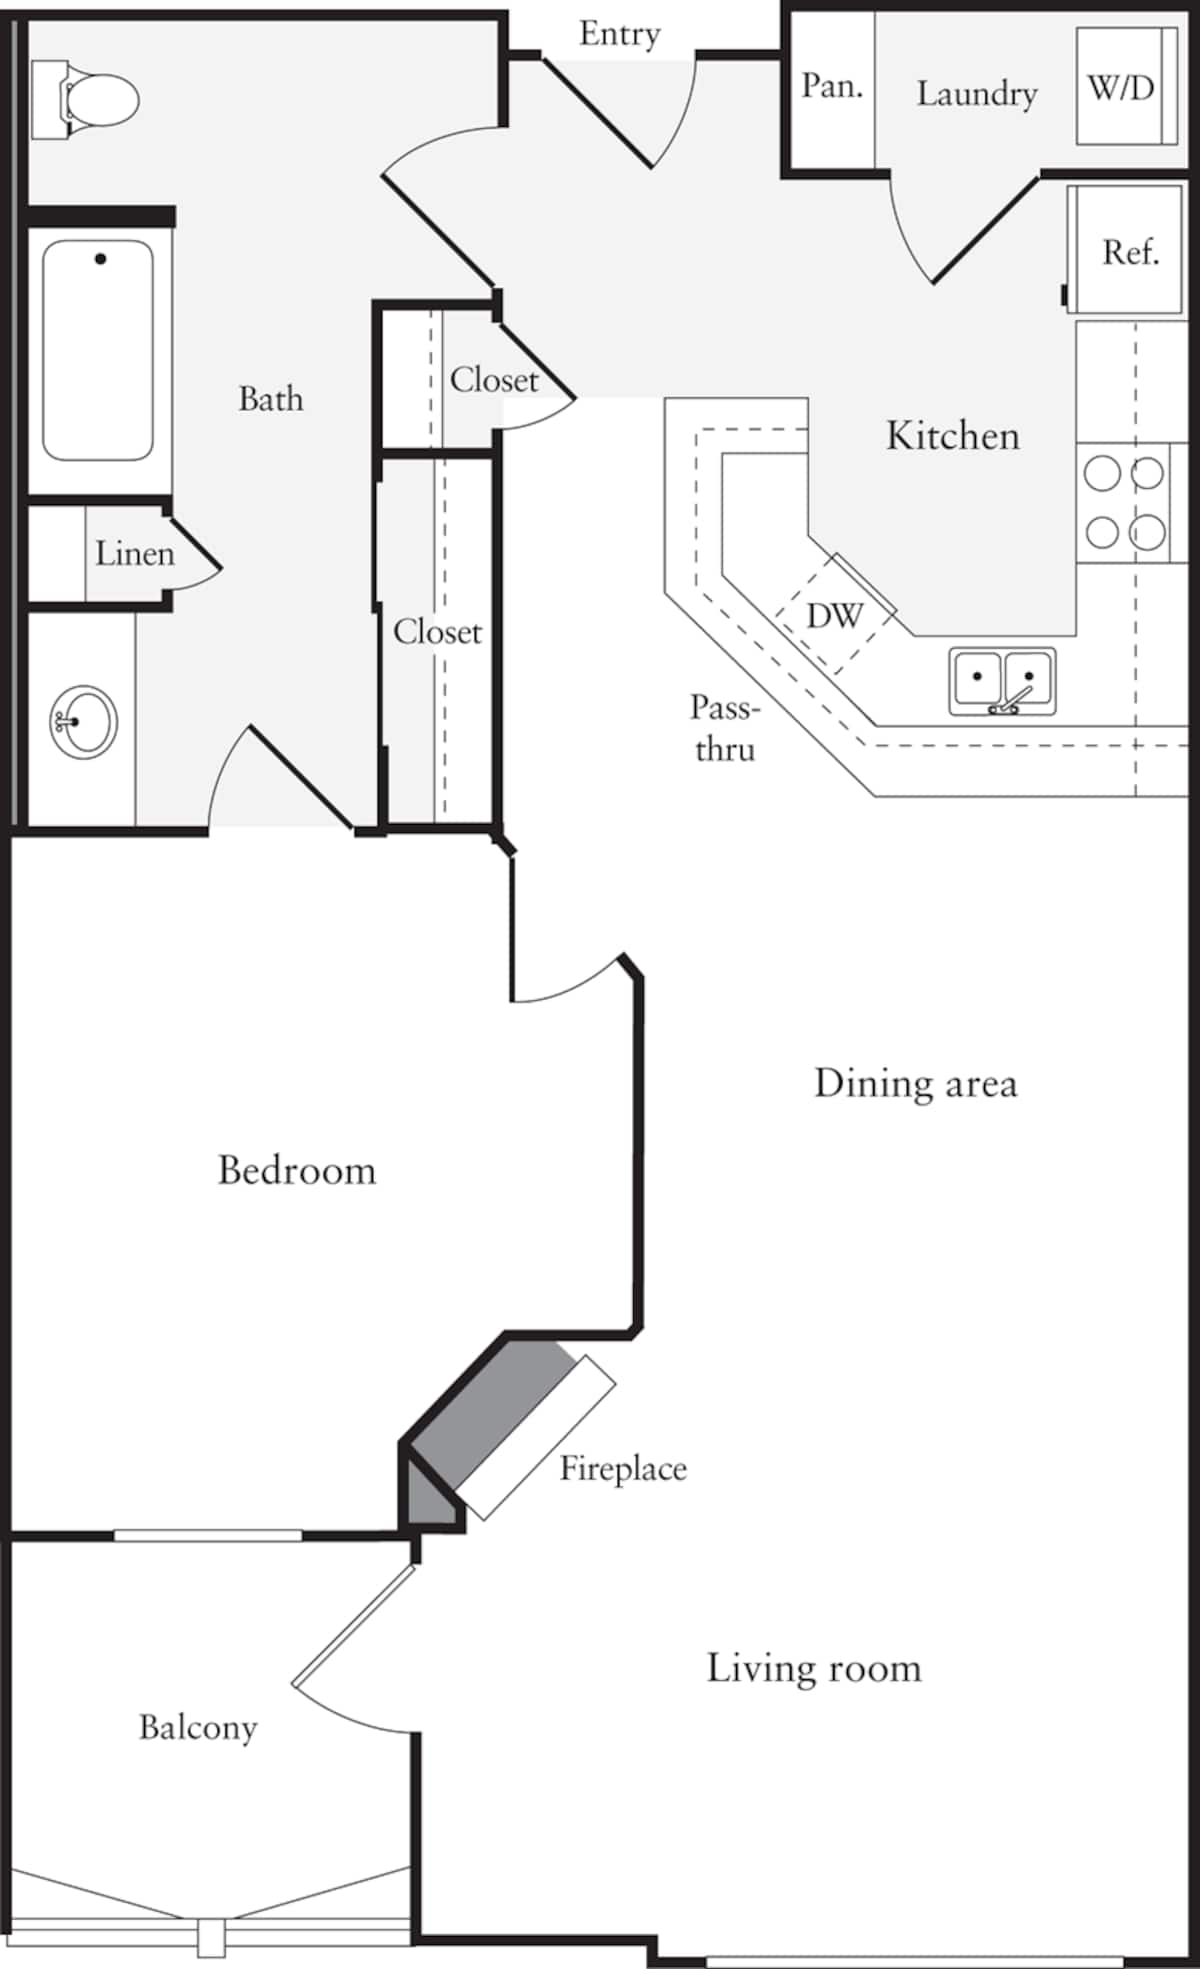 Floorplan diagram for 1 Bedroom C, showing 1 bedroom